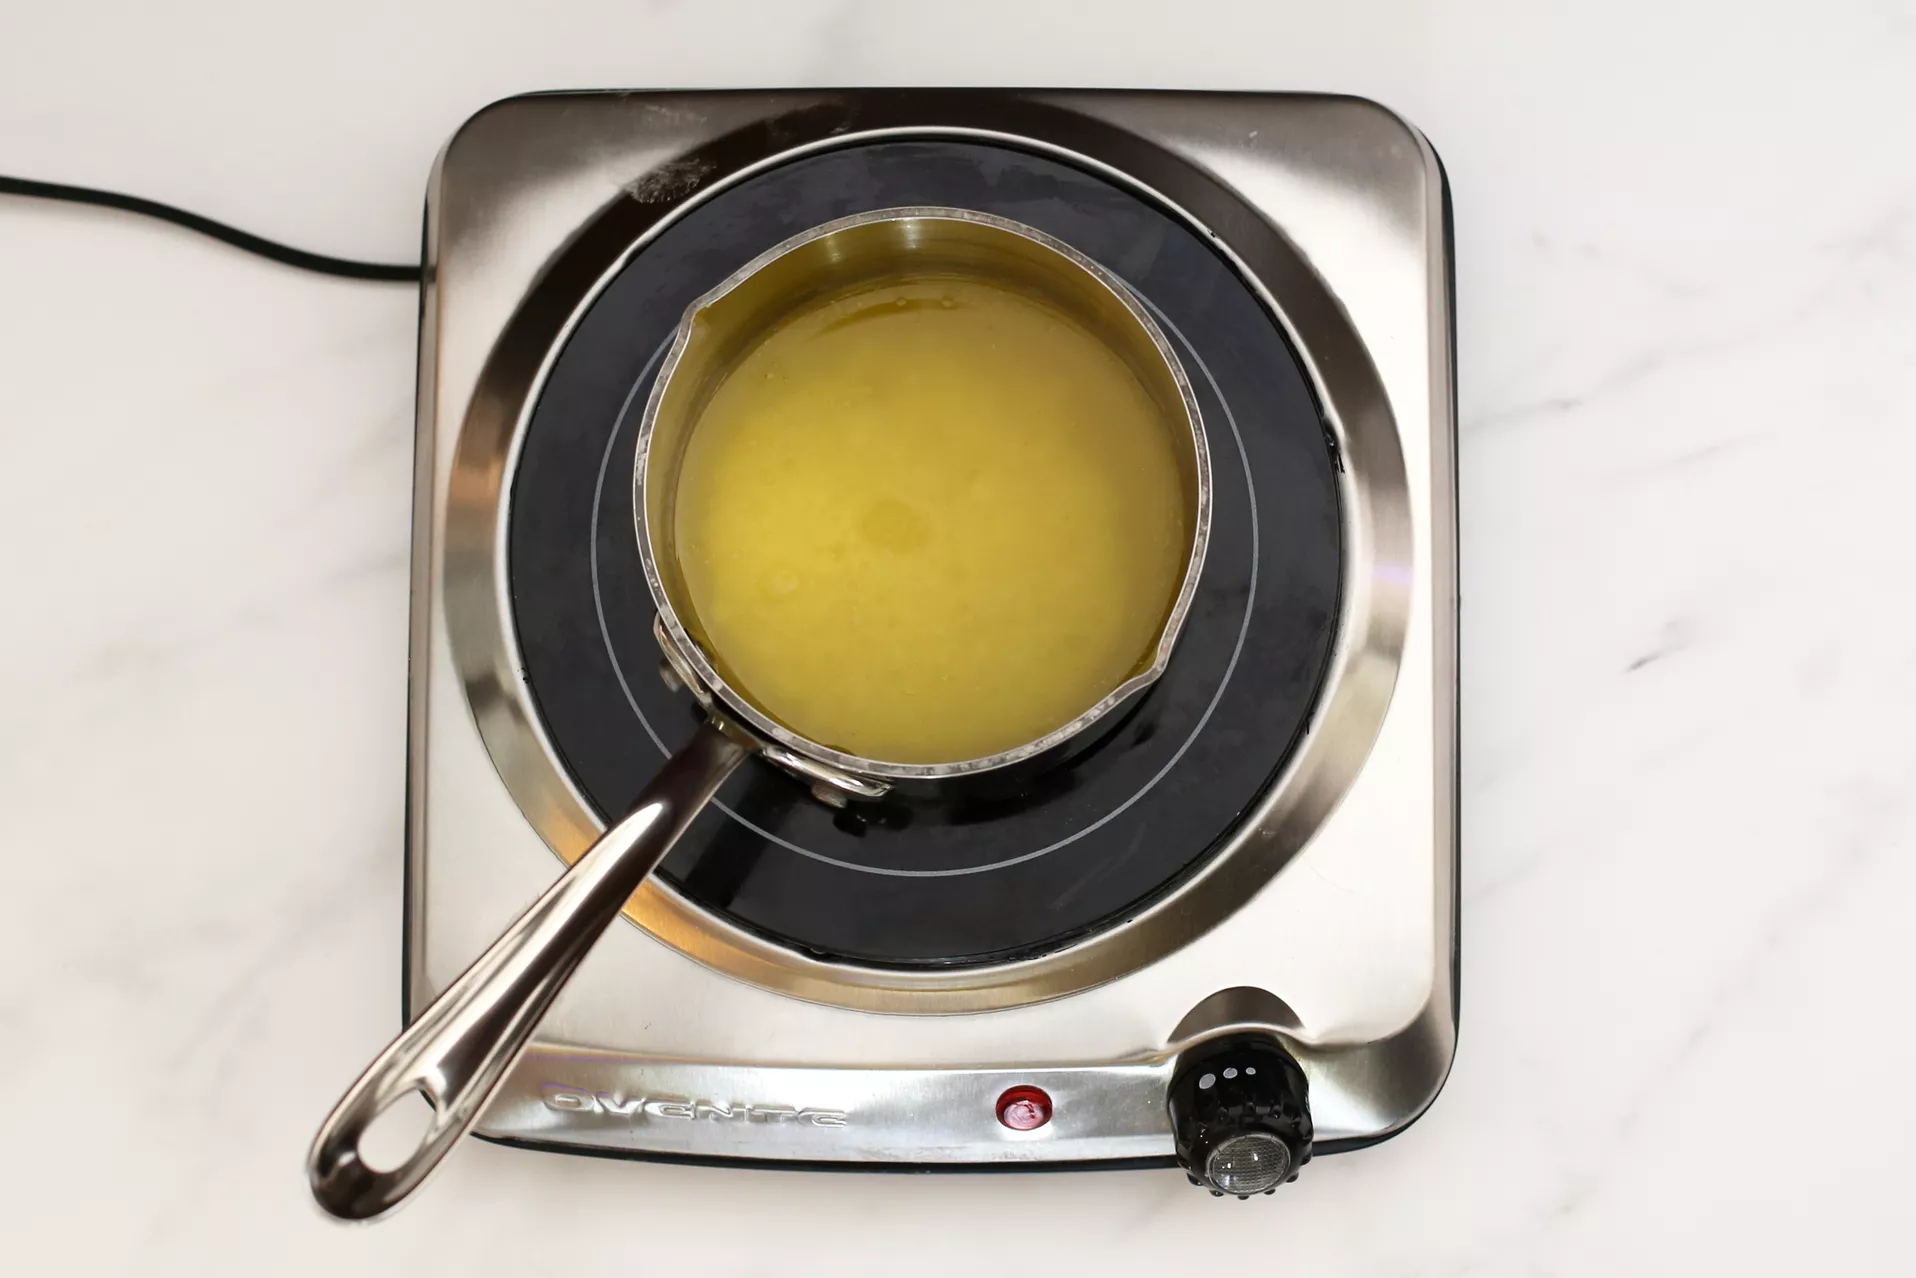 طريقة عمل الفراخ البانية بالثوم والجبنة البارميزان2